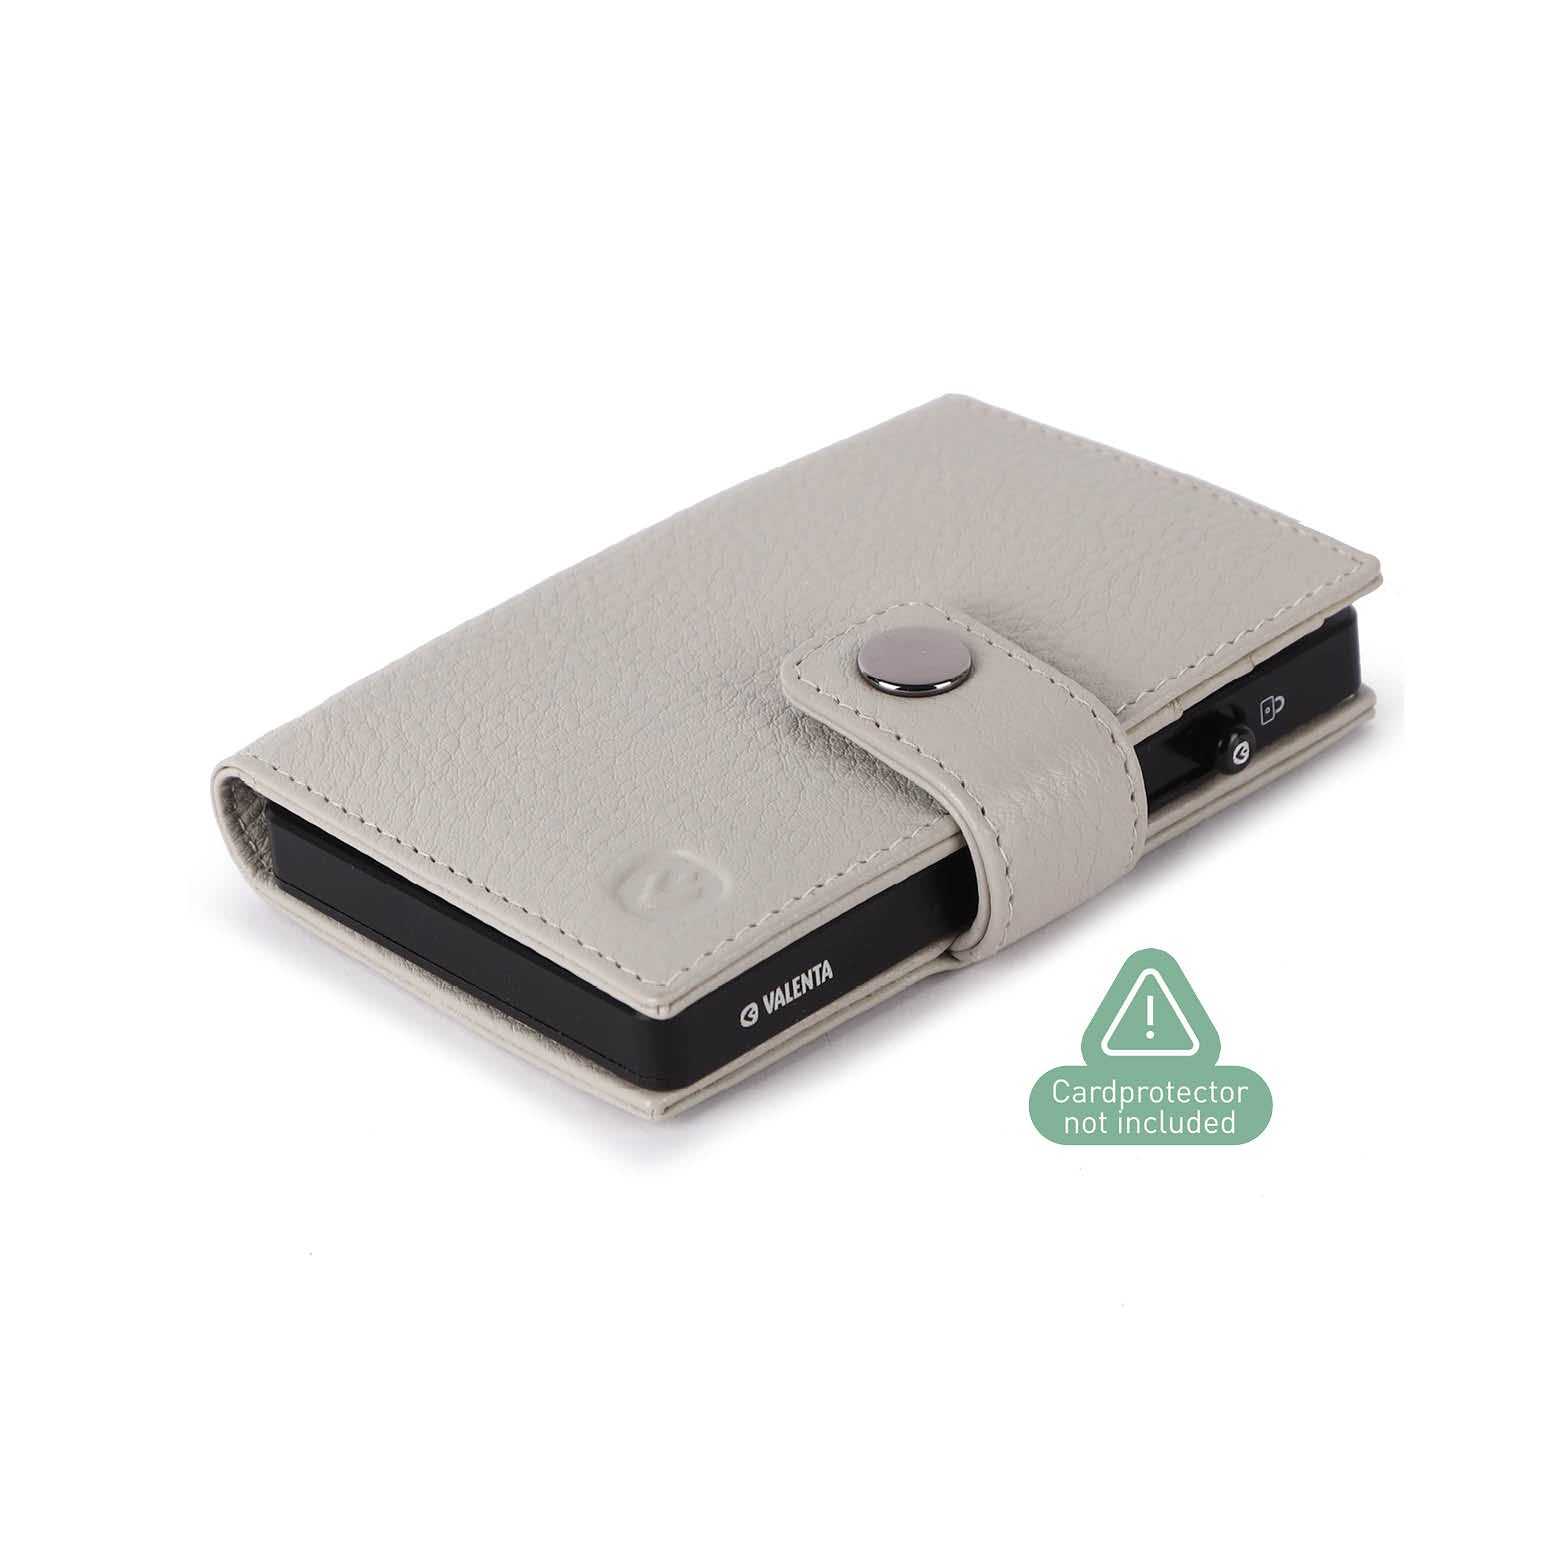 Off-White echt leren portemonnee met MagSafe voor pasjeshouder Cardprotector Aluminium